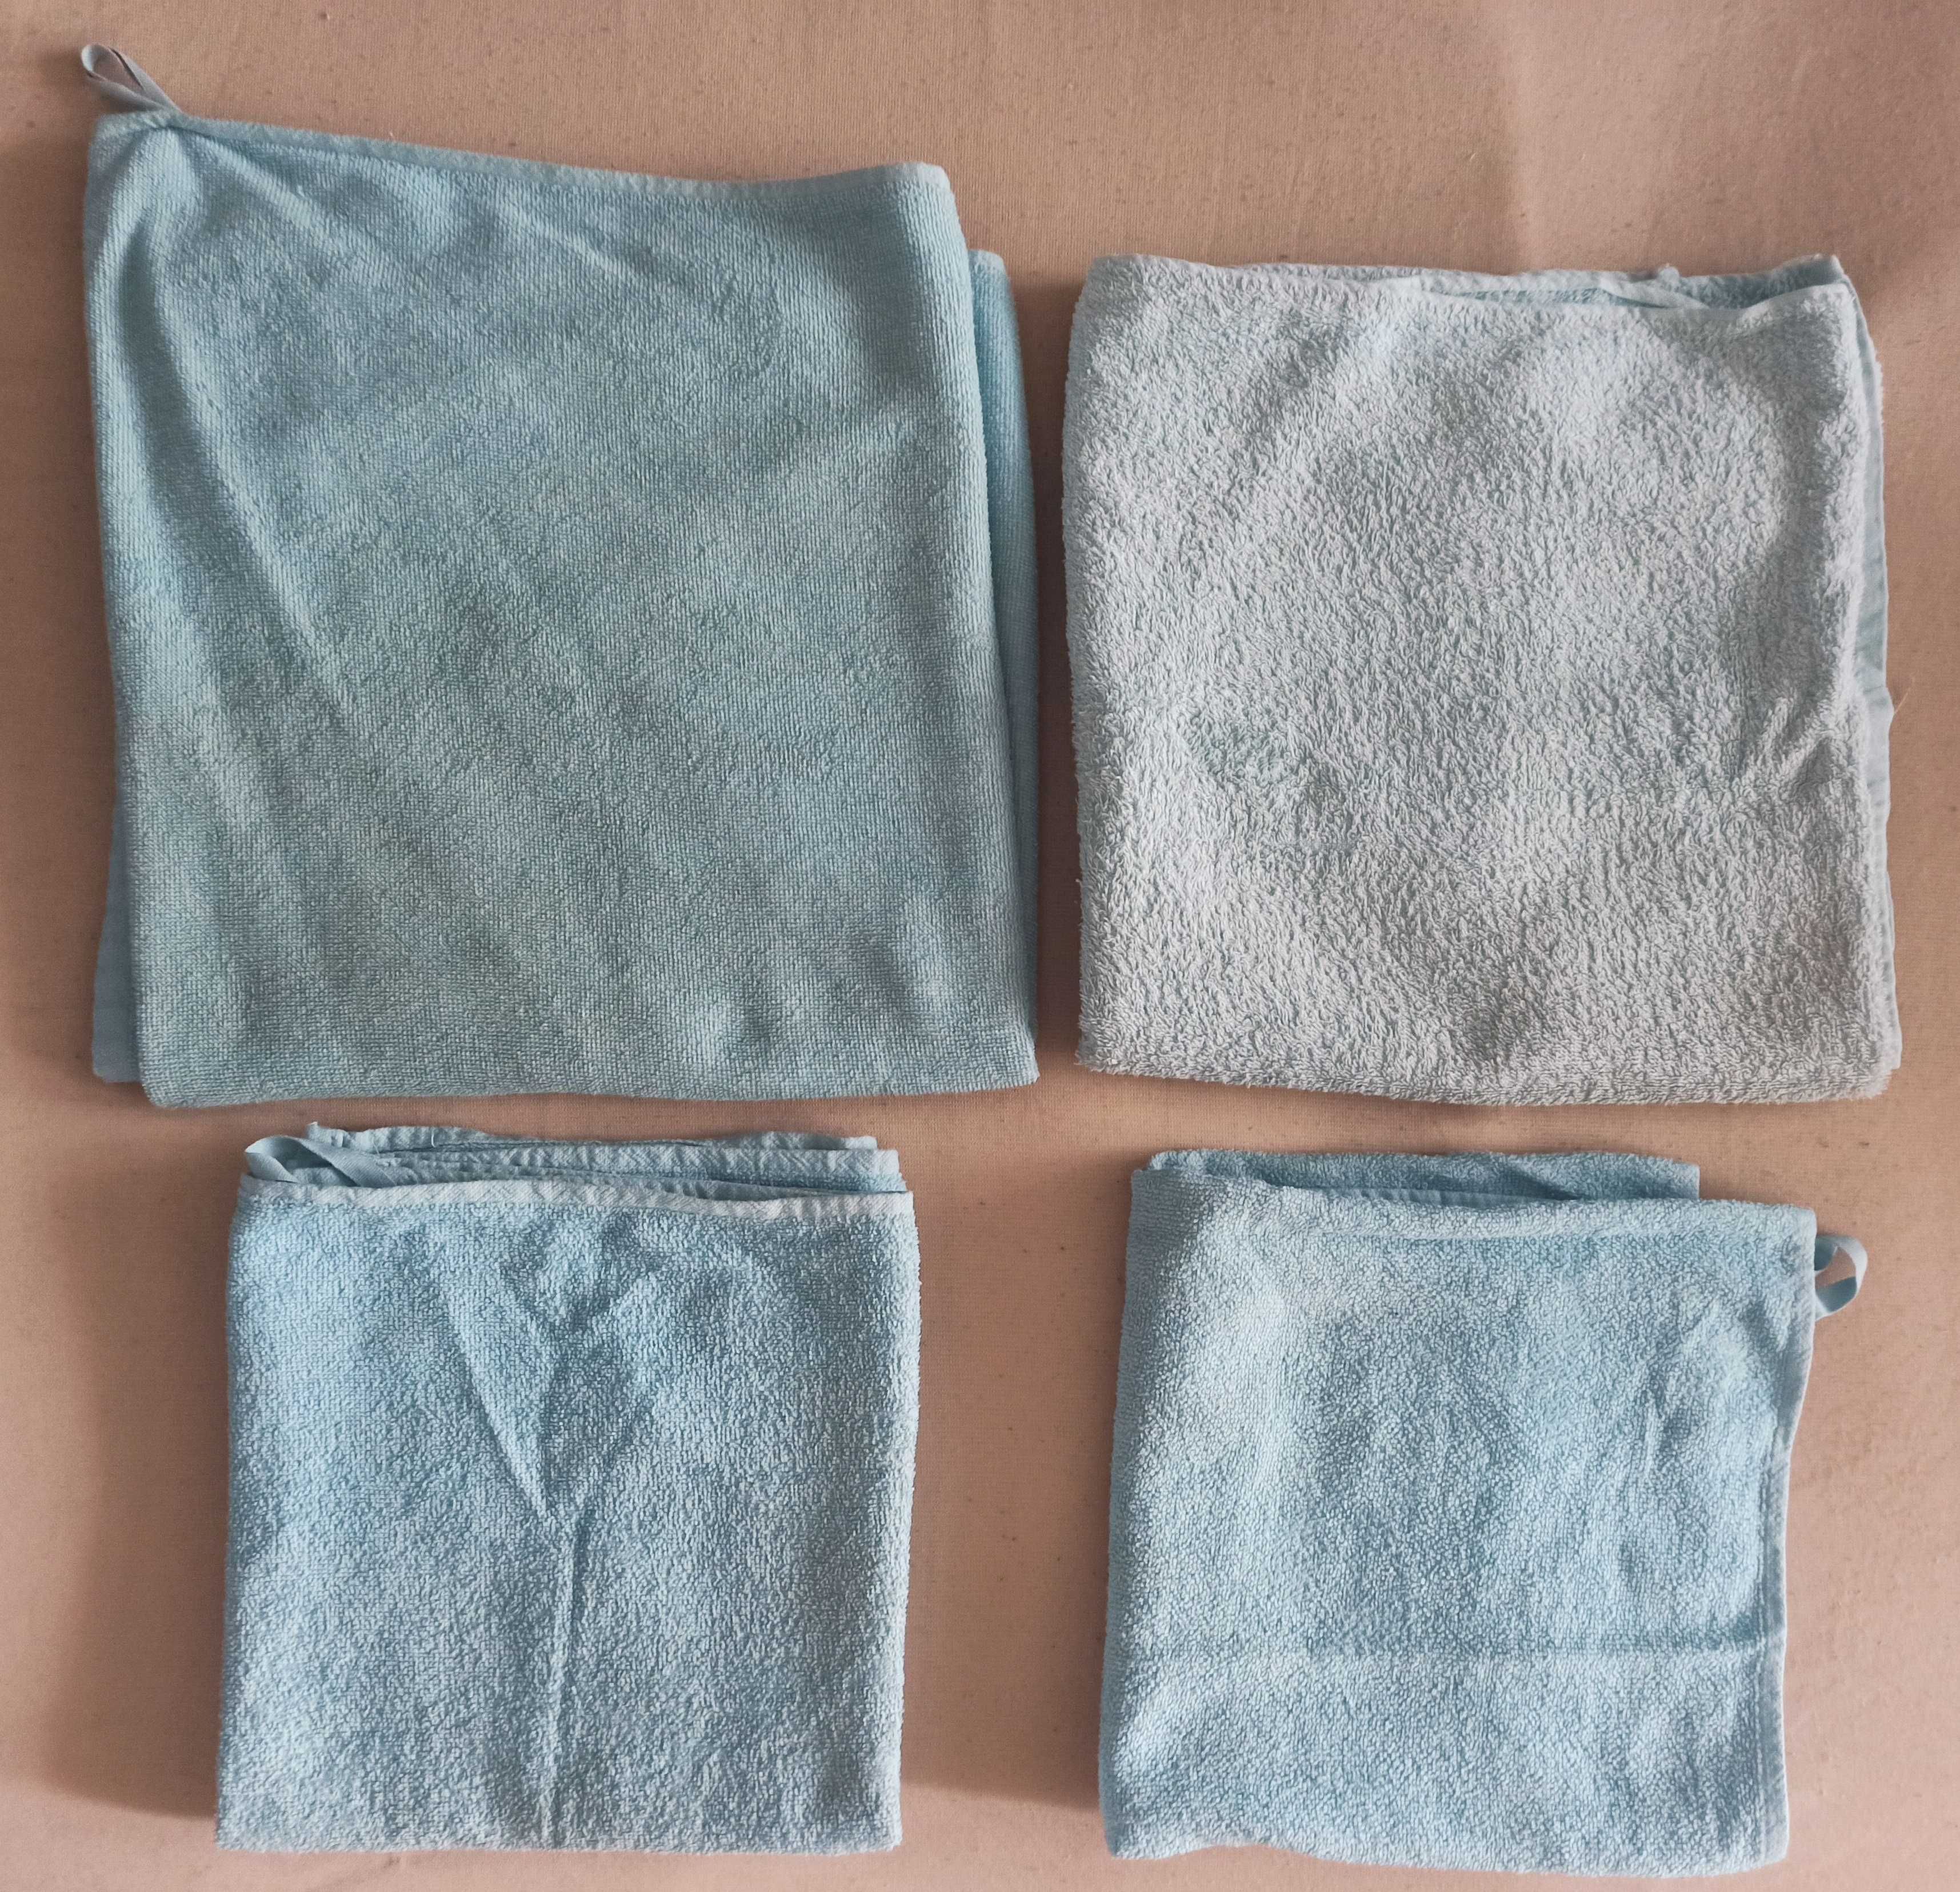 ręczniki duże i małe zestaw 4 szt. niebieskie 155x69 cm 99x51 cm Ikea